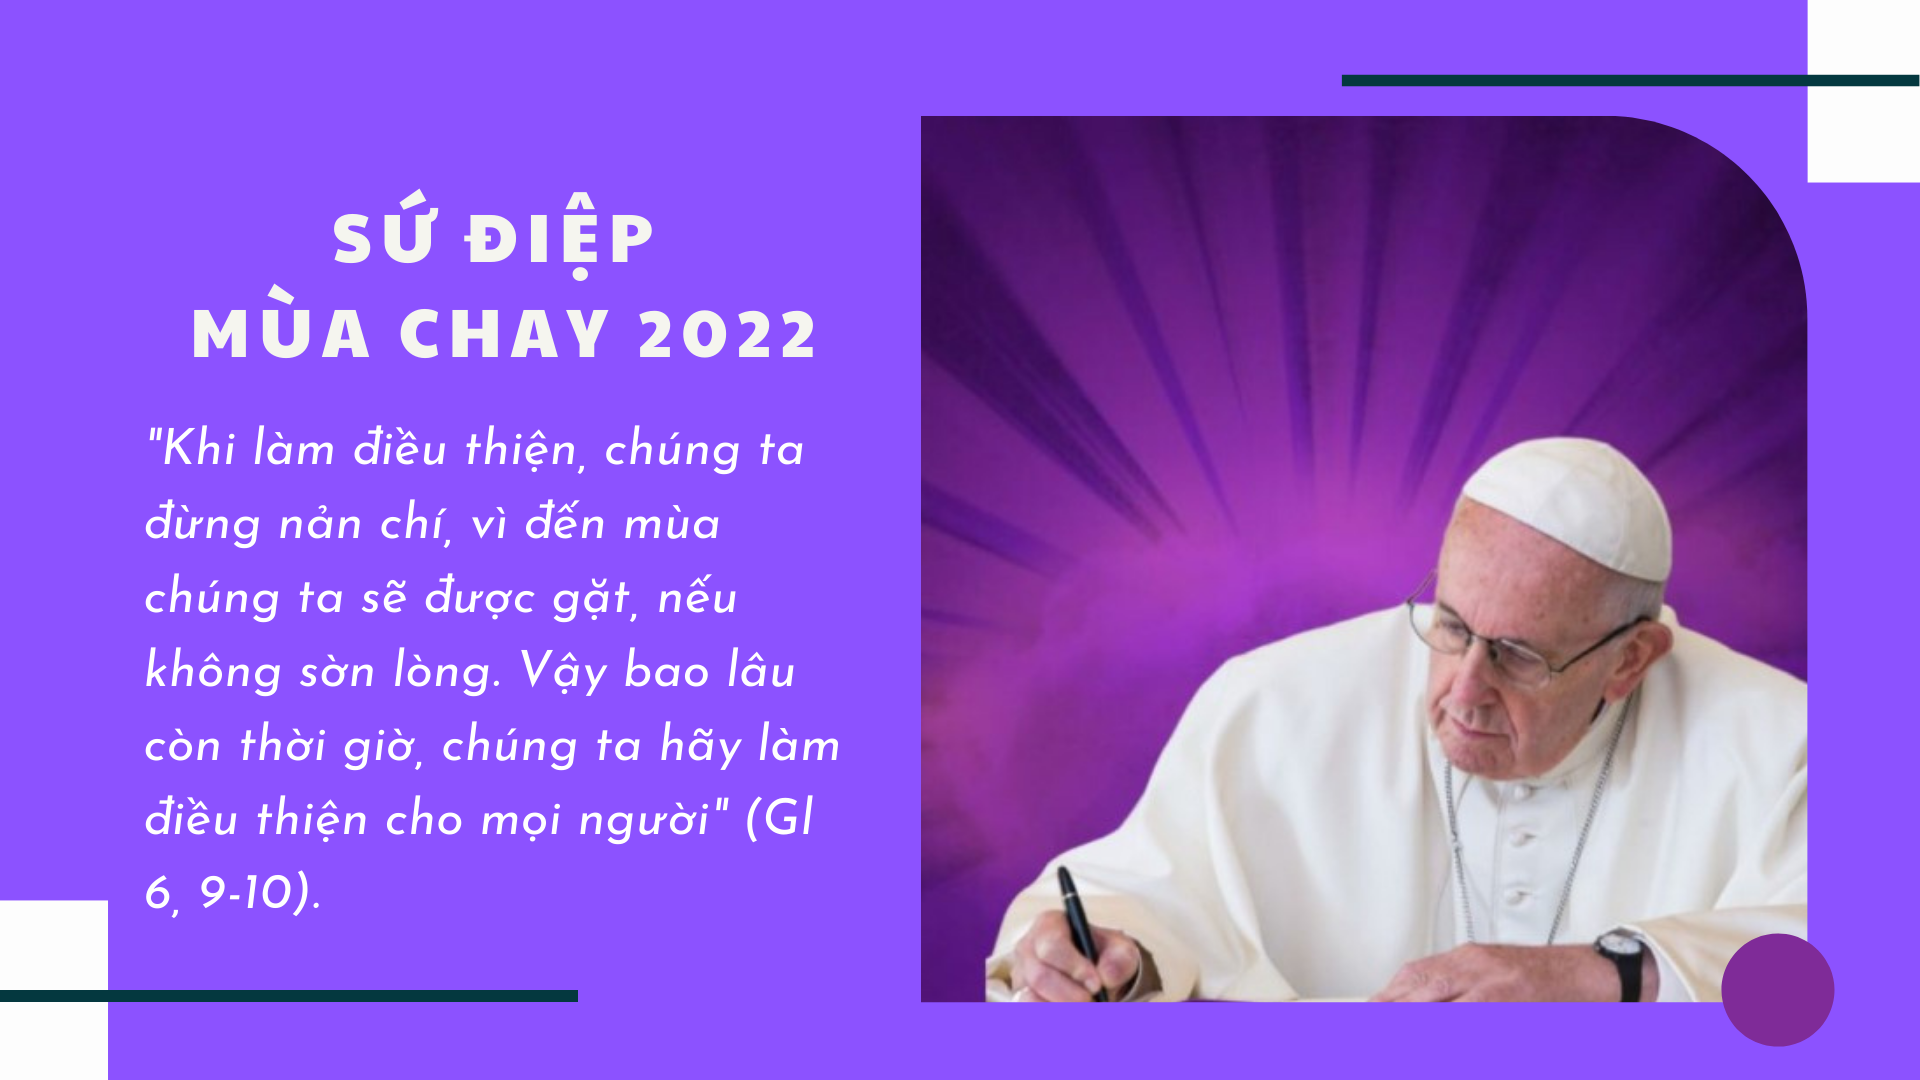 Sứ điệp Mùa chay năm 2022 của Đức Thánh Cha